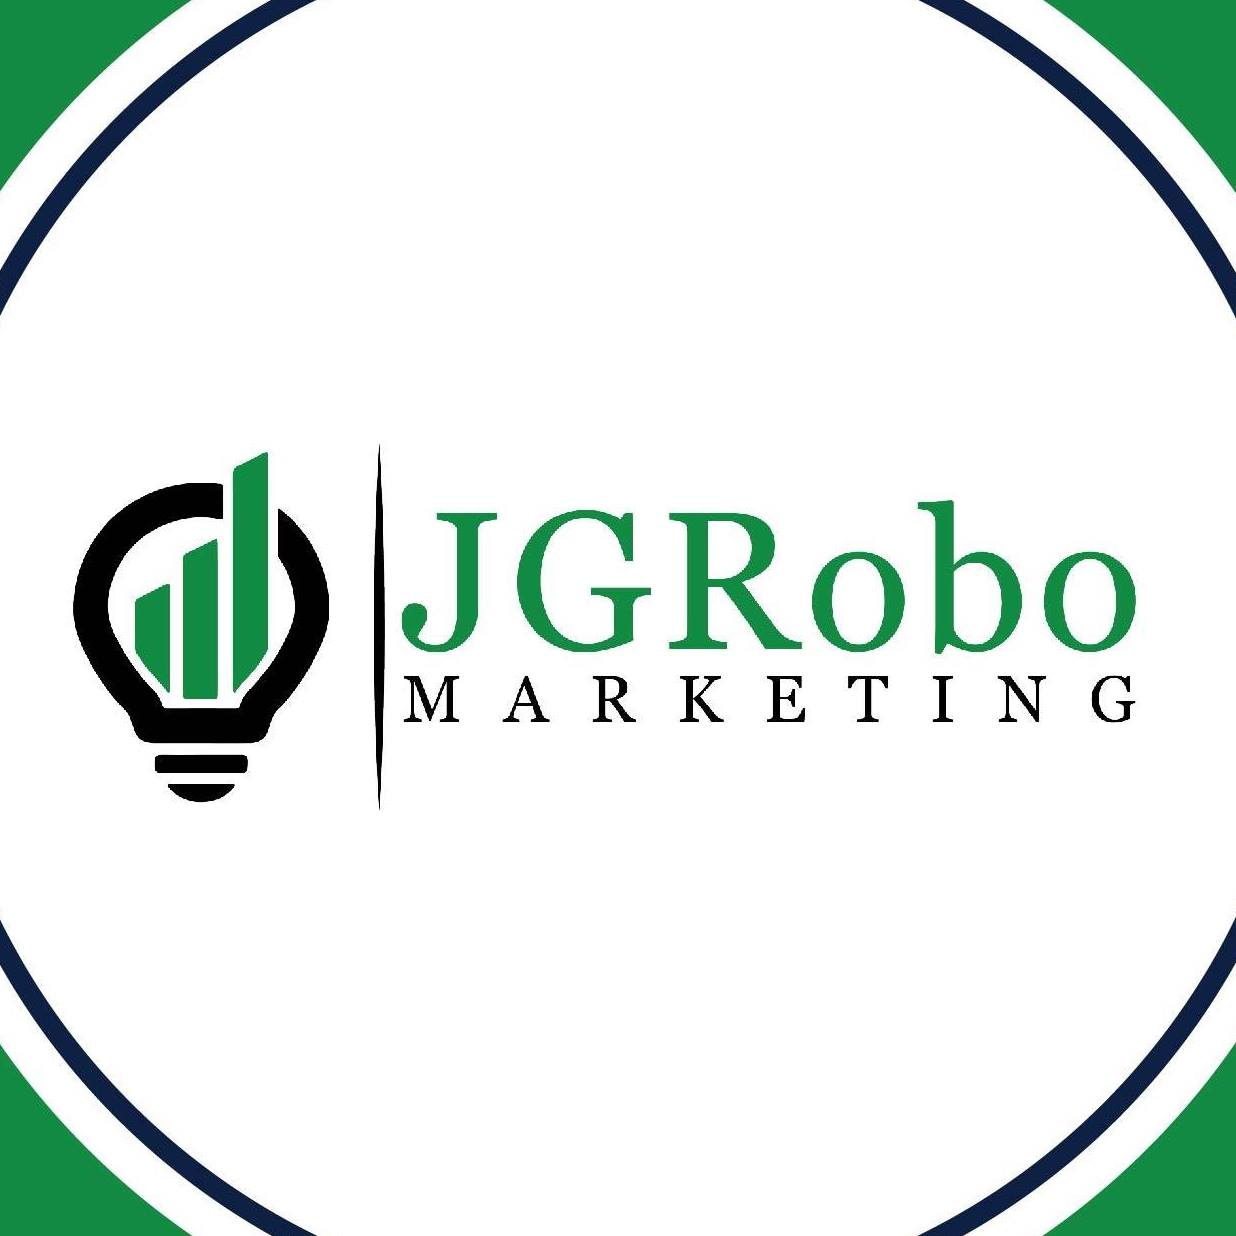 Company logo of JGRobo Marketing, Inc.